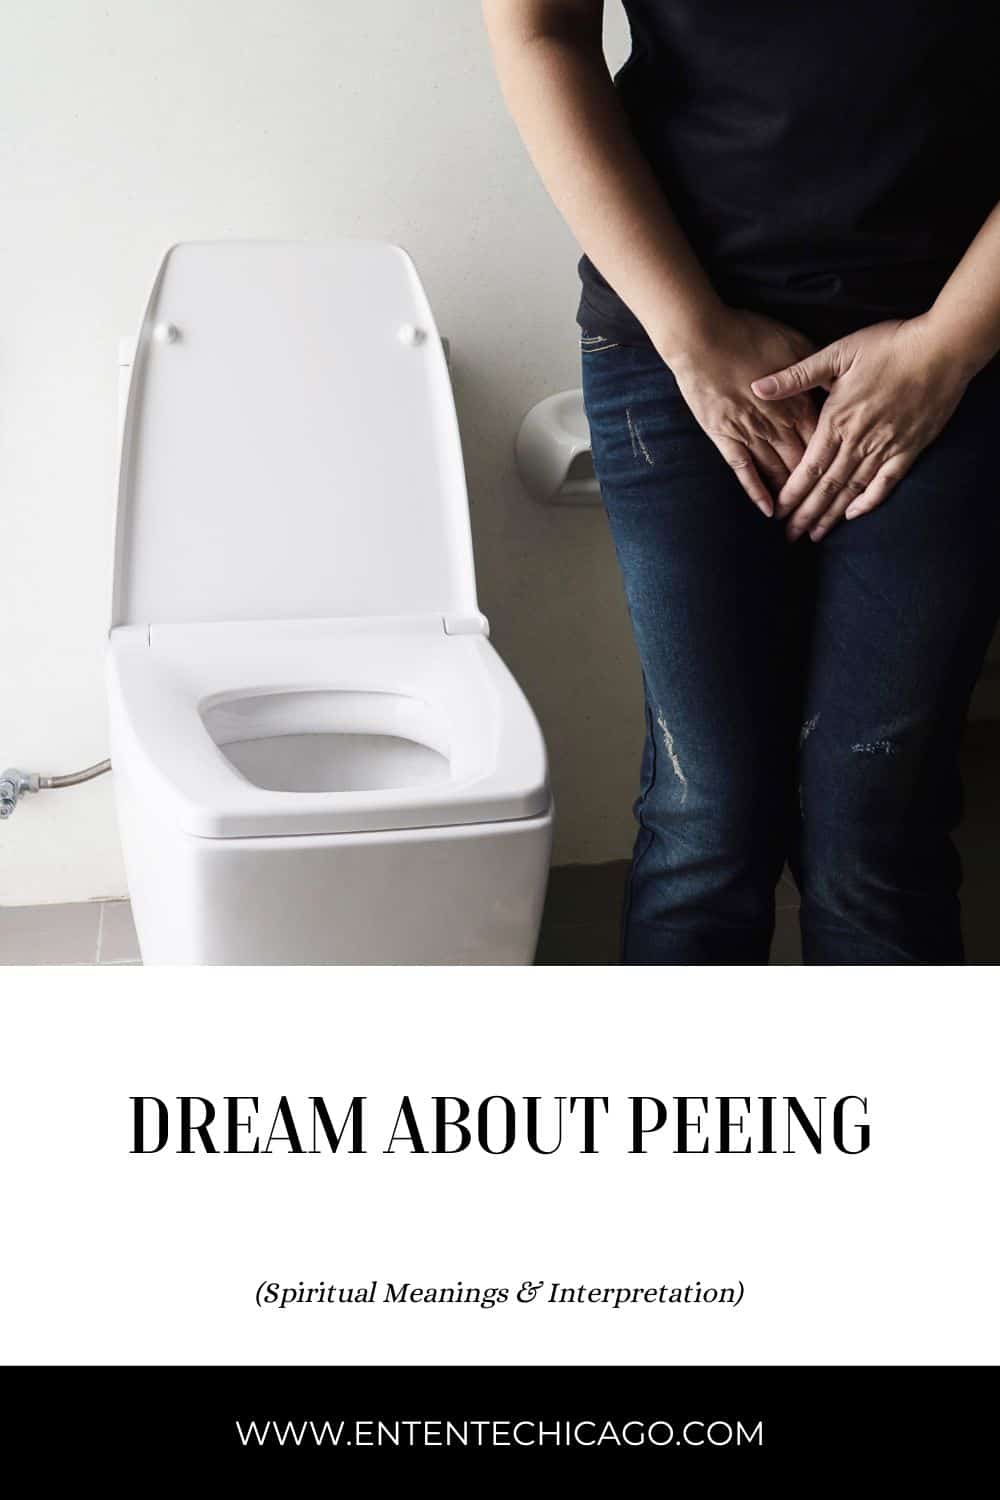  11 Interprétation des rêves d'urine et de pipi